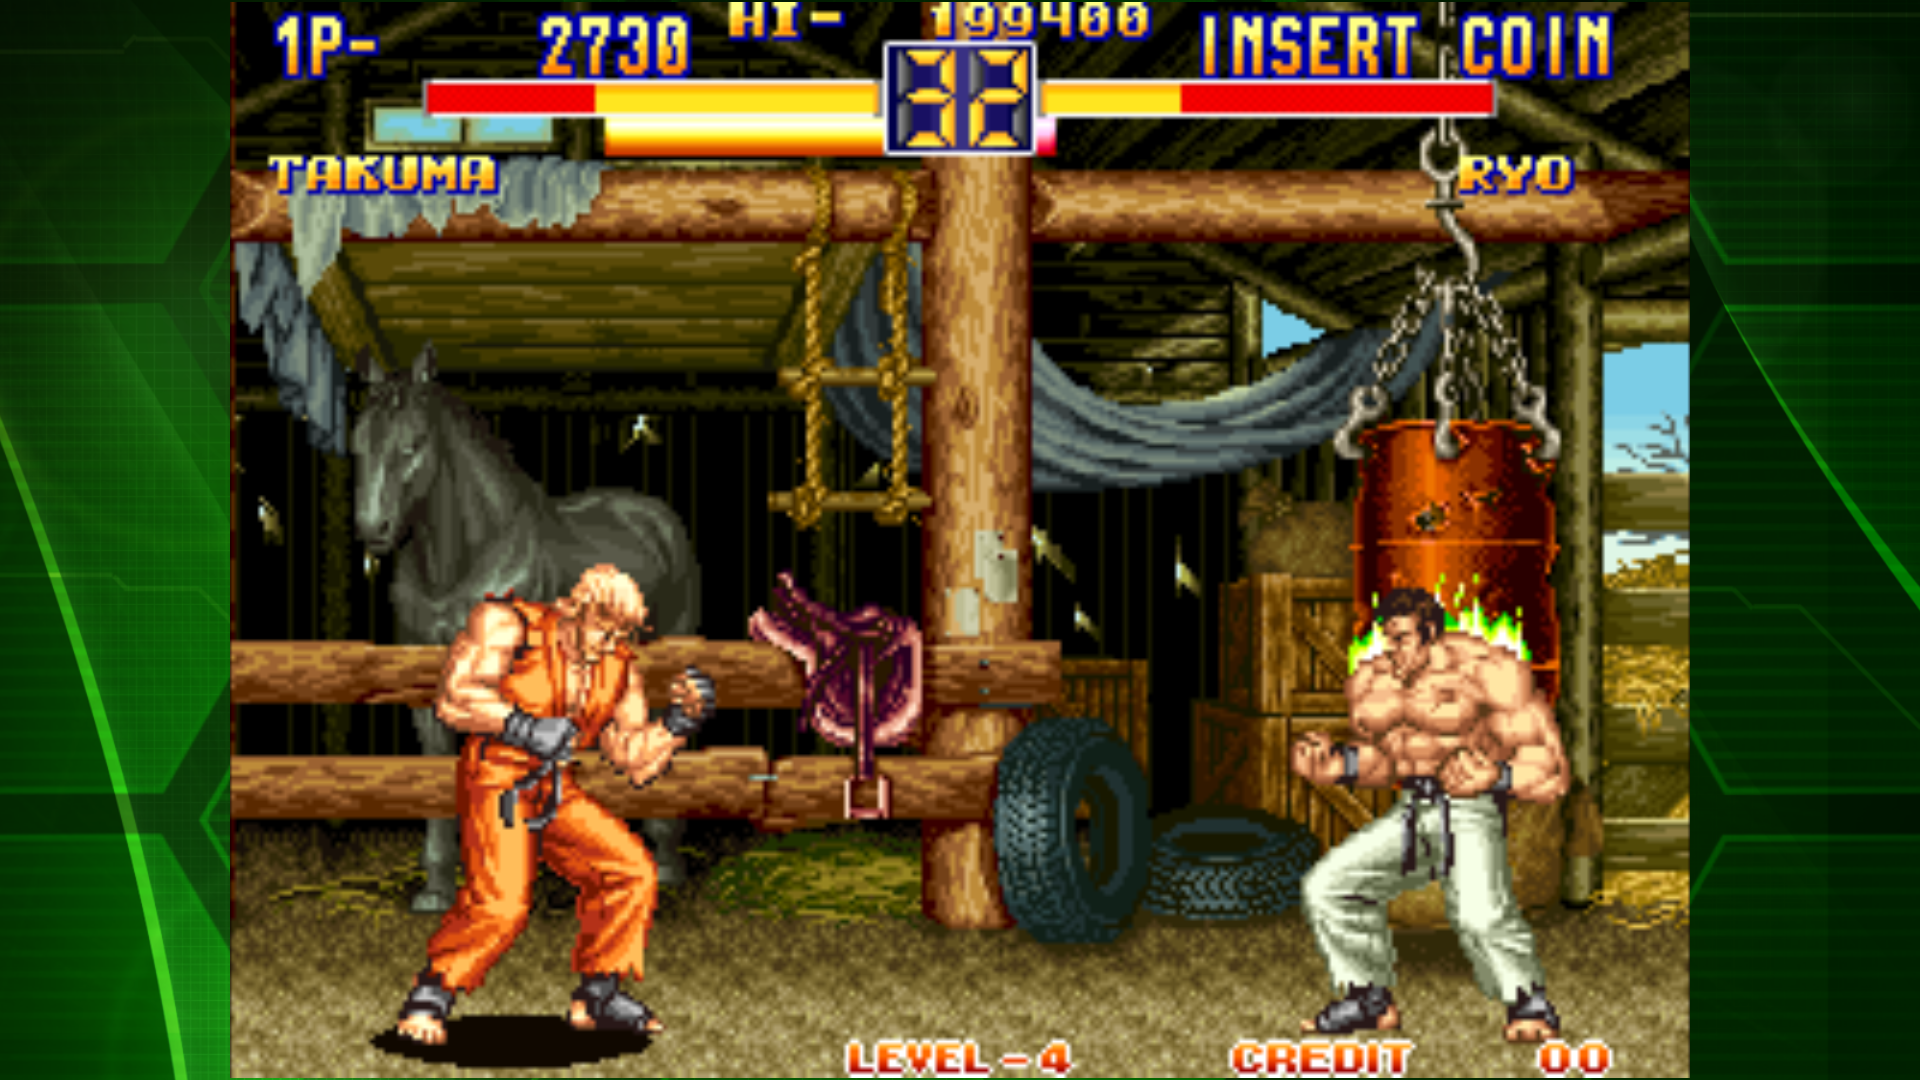 ART OF FIGHTING 2 ACA NEOGEO screenshot game